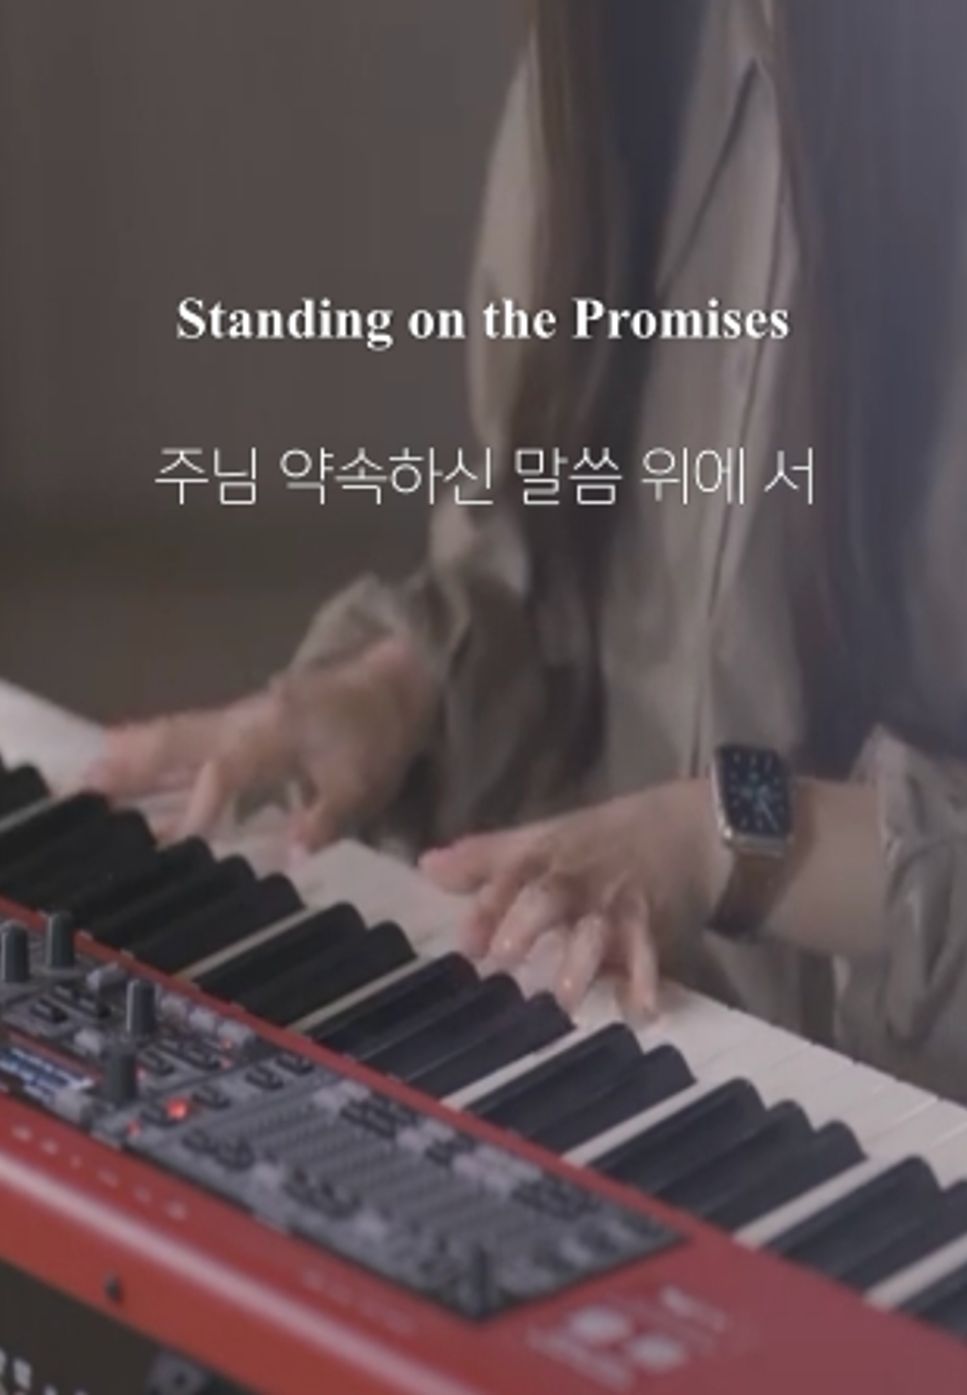 R. K. Carter - 주님 약속하신 말씀 위에 서 Standing on the Promises by Choi Chanmi